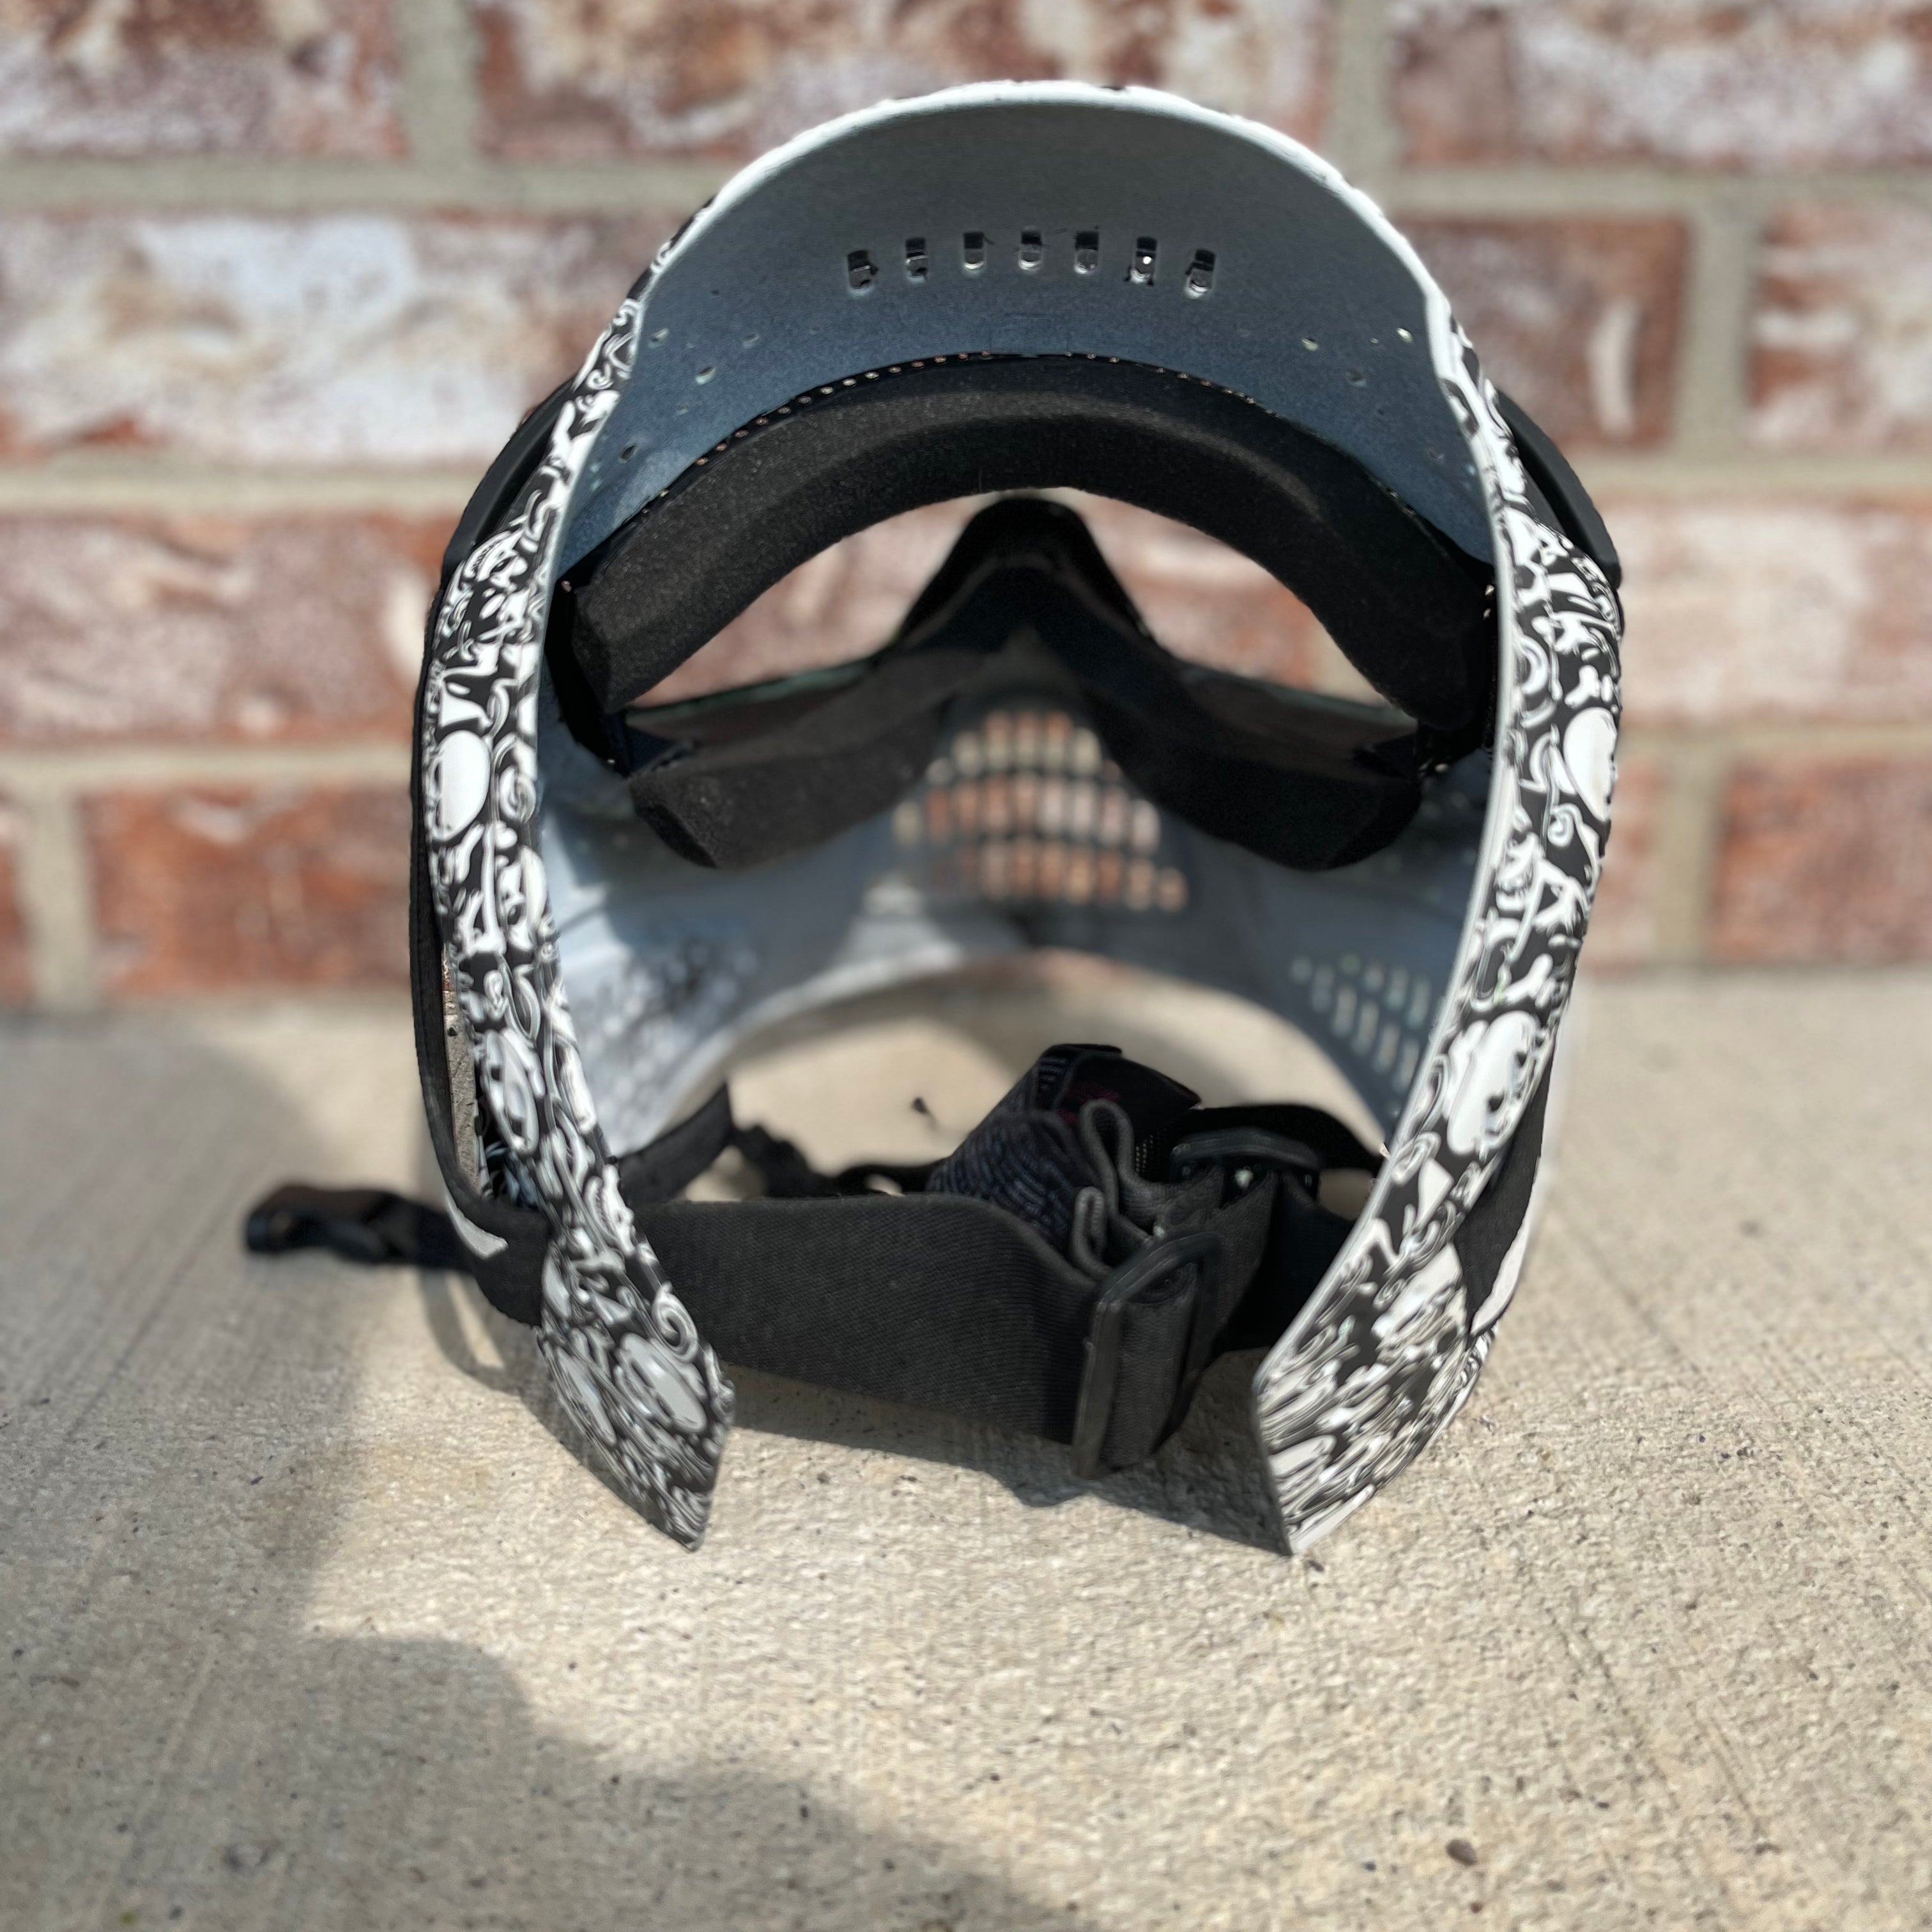 Used JT Paintball Mask - Black/White Skulls